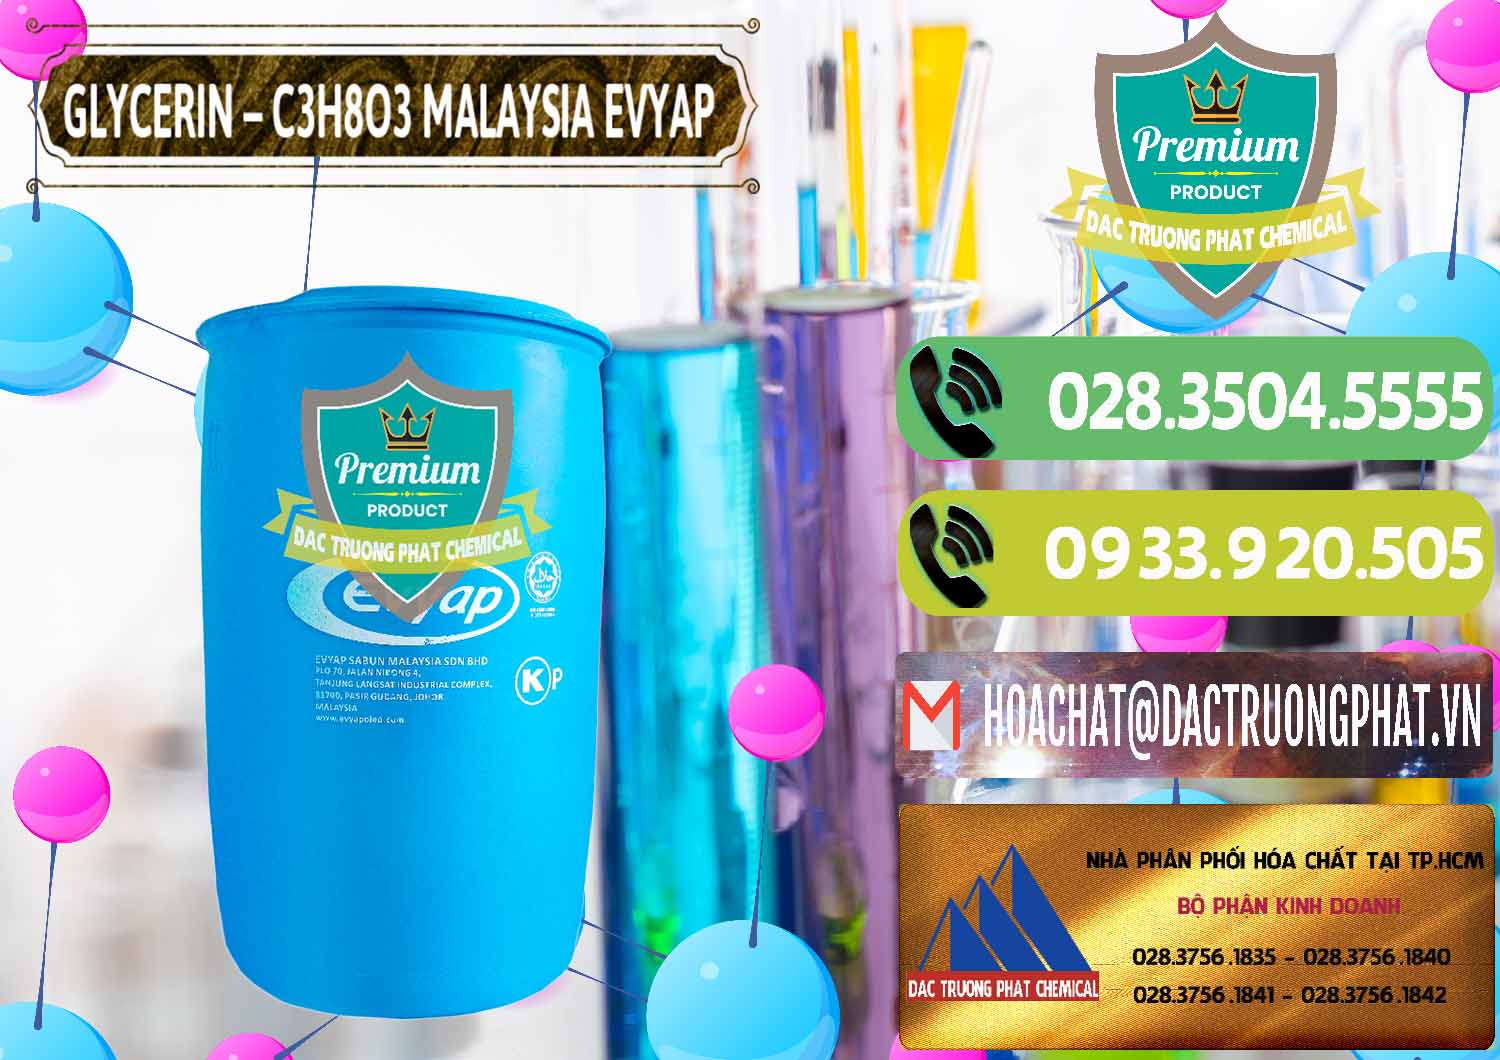 Cty bán ( cung ứng ) Glycerin – C3H8O3 Malaysia Evyap - 0066 - Công ty chuyên cung cấp - kinh doanh hóa chất tại TP.HCM - hoachatmientay.vn